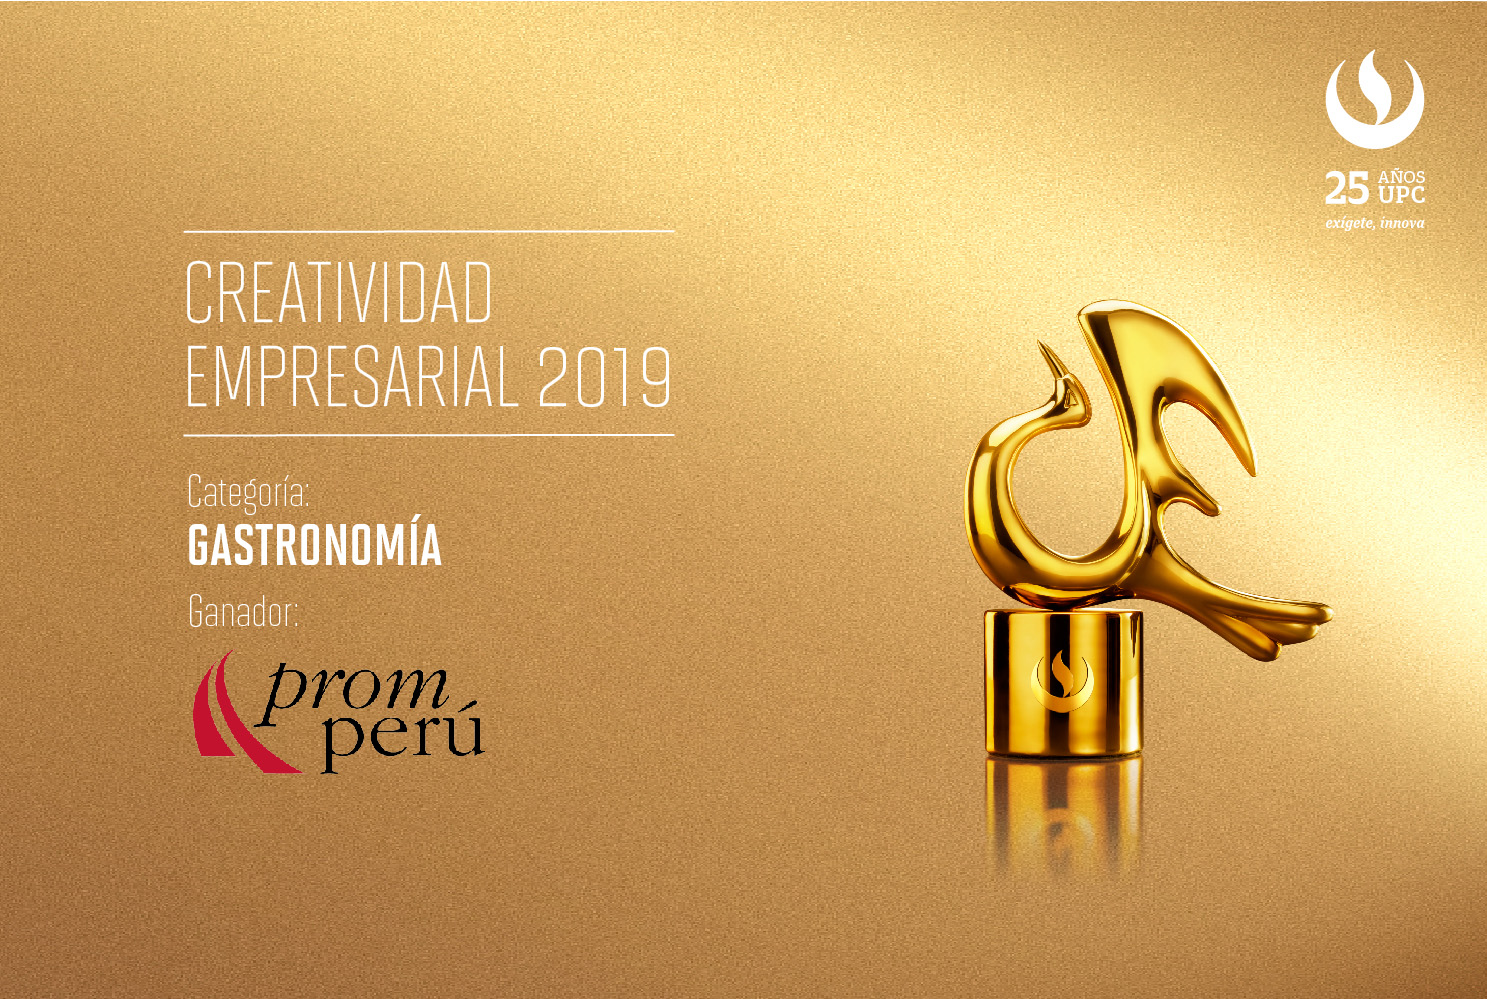 Creatividad Empresarial 2019: La feria gastronómica Perú, mucho gusto fue reconocida en la categoría Gastronomía